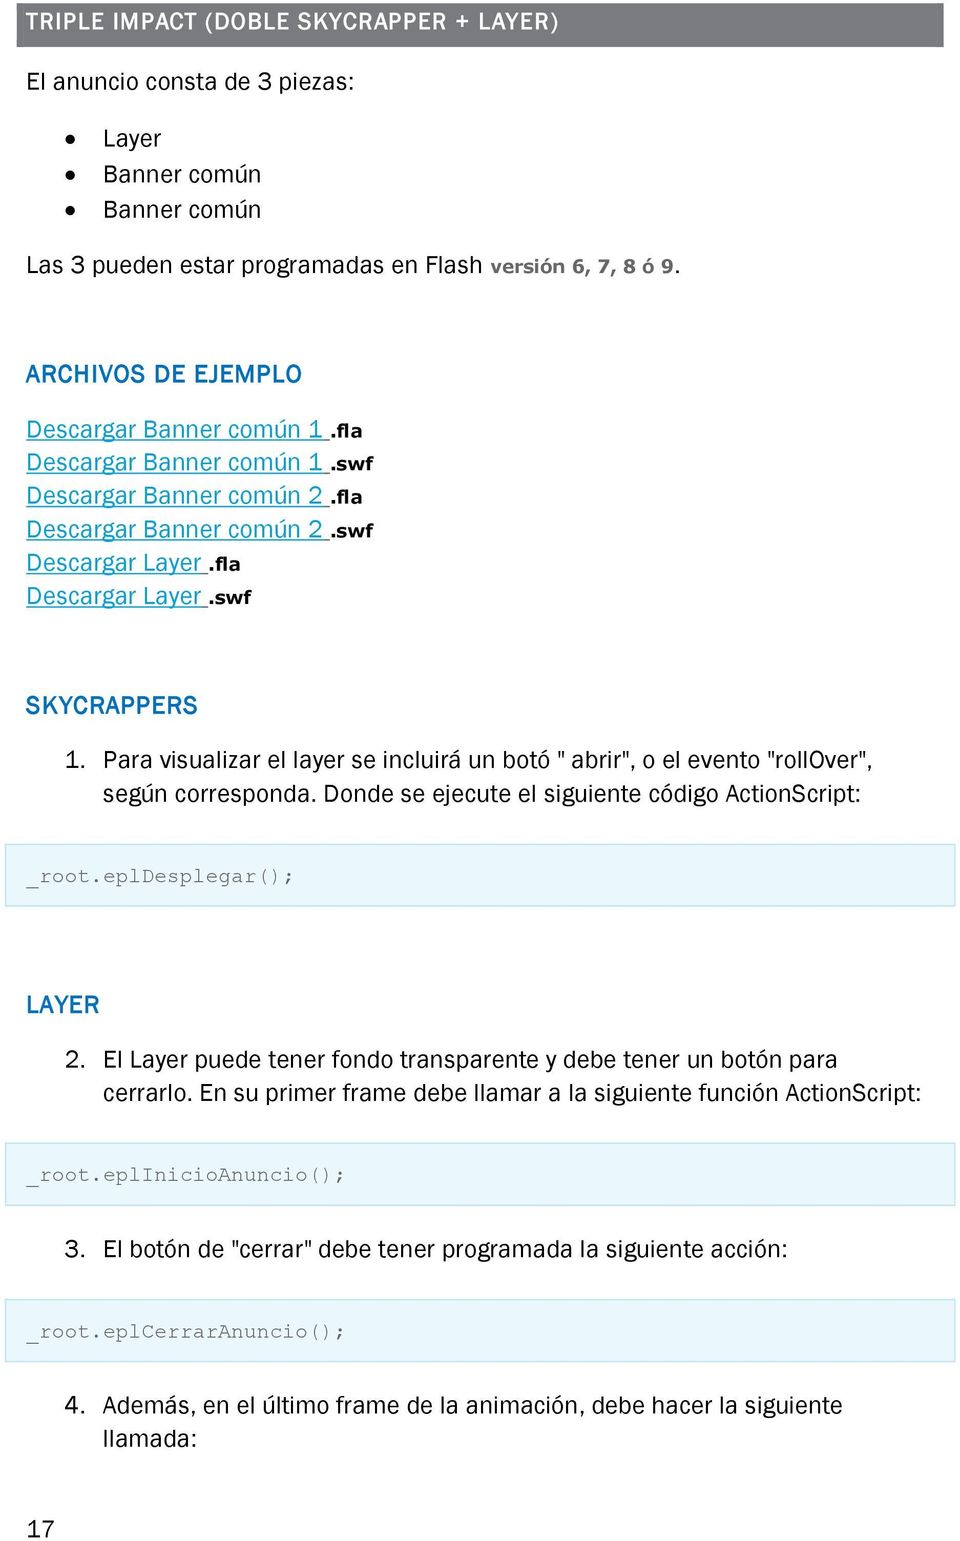 Para visualizar el layer se incluirá un botó " abrir", o el evento "rollover", según corresponda. Donde se ejecute el siguiente código ActionScript: _root.epldesplegar(); LAYER 2.